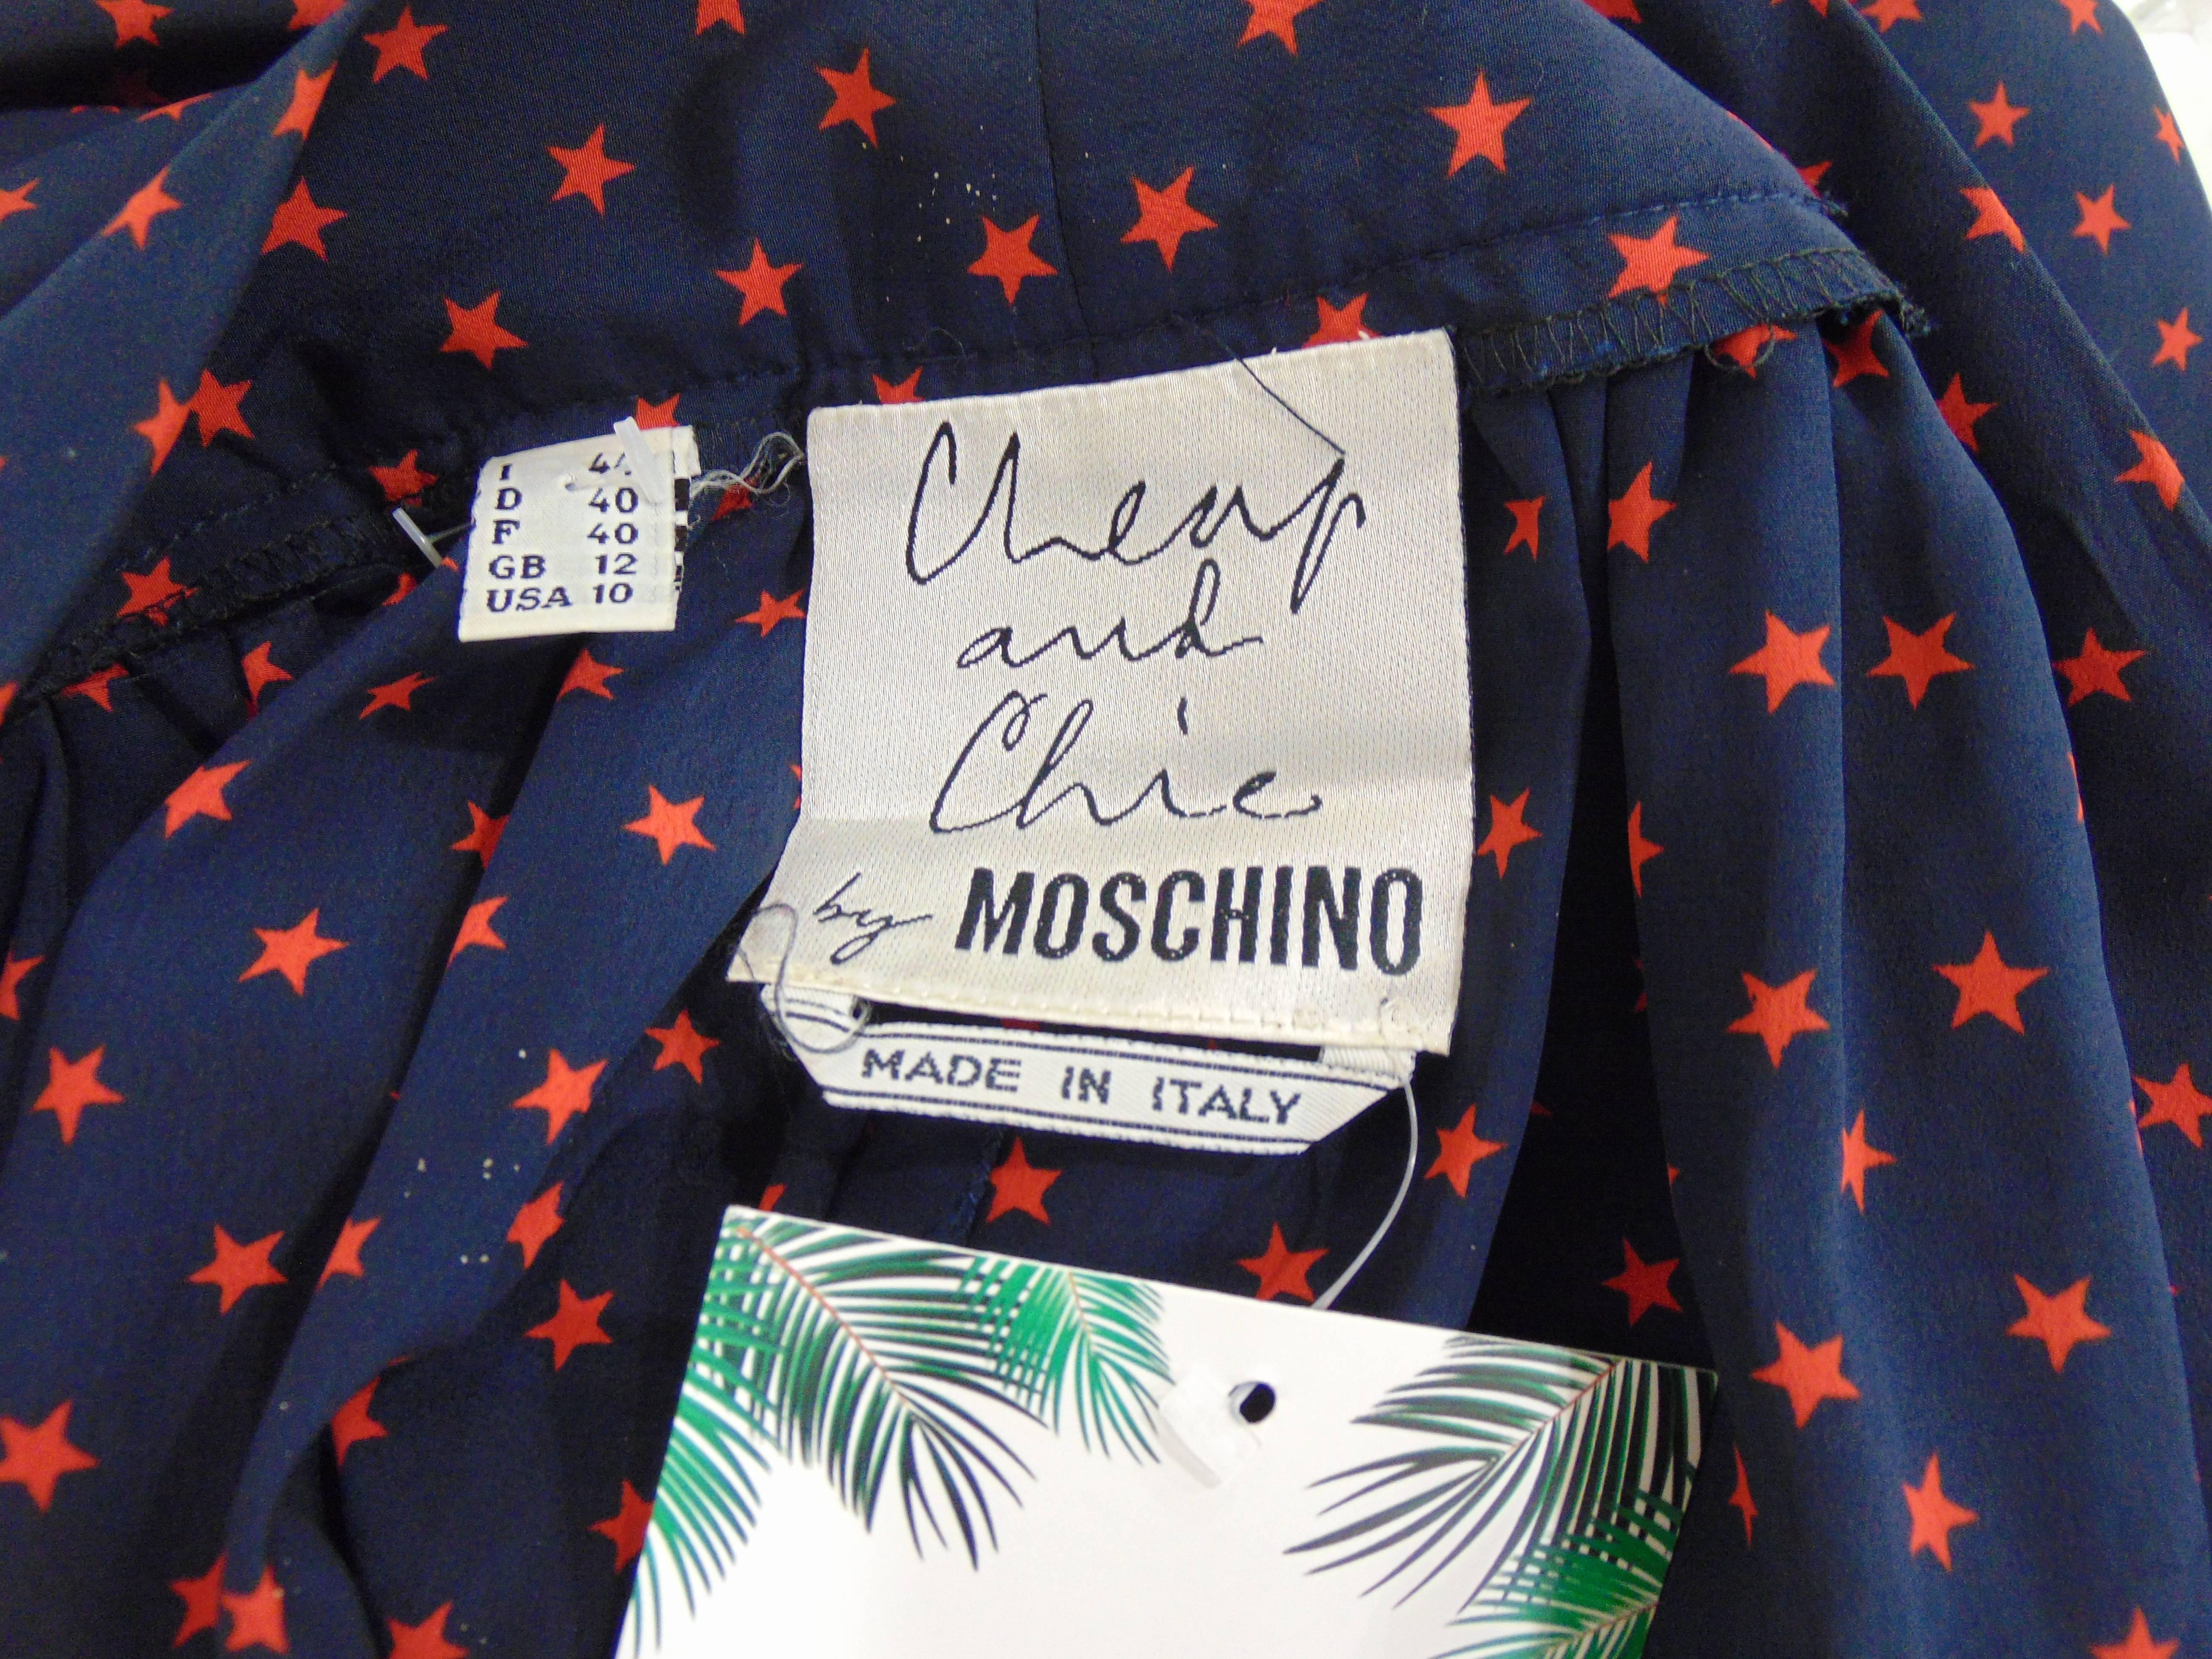 Moschino Cheap & Chic blu red stars silk skirt 1